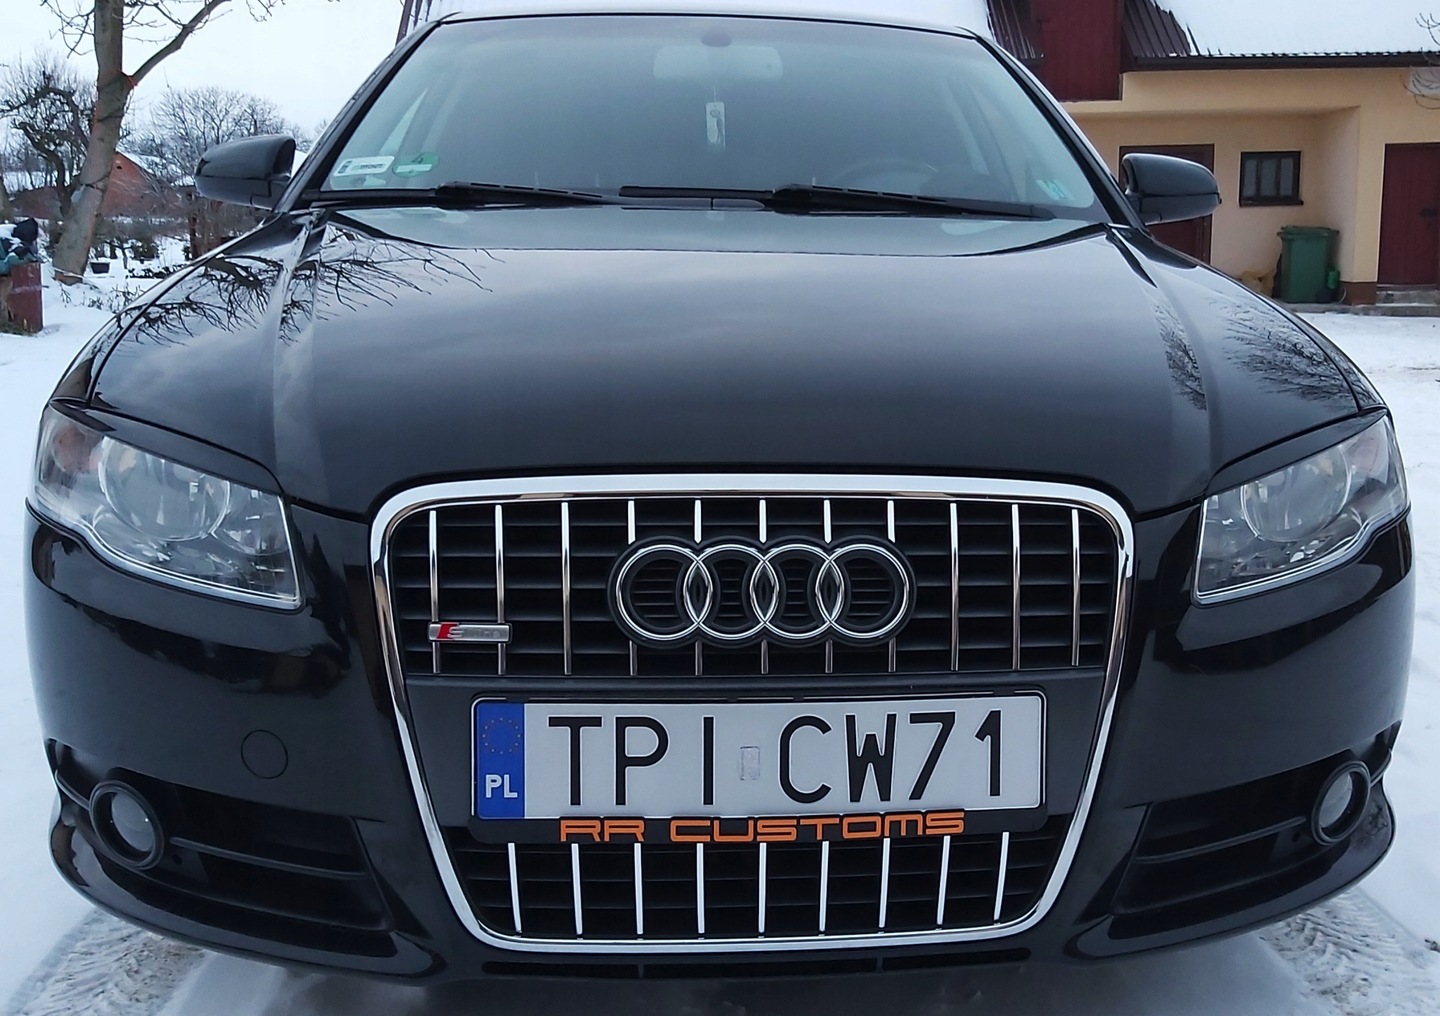 pirkti №4, Audi a4 b7 s-line moldingai chromas grilis priekines groteles tuning